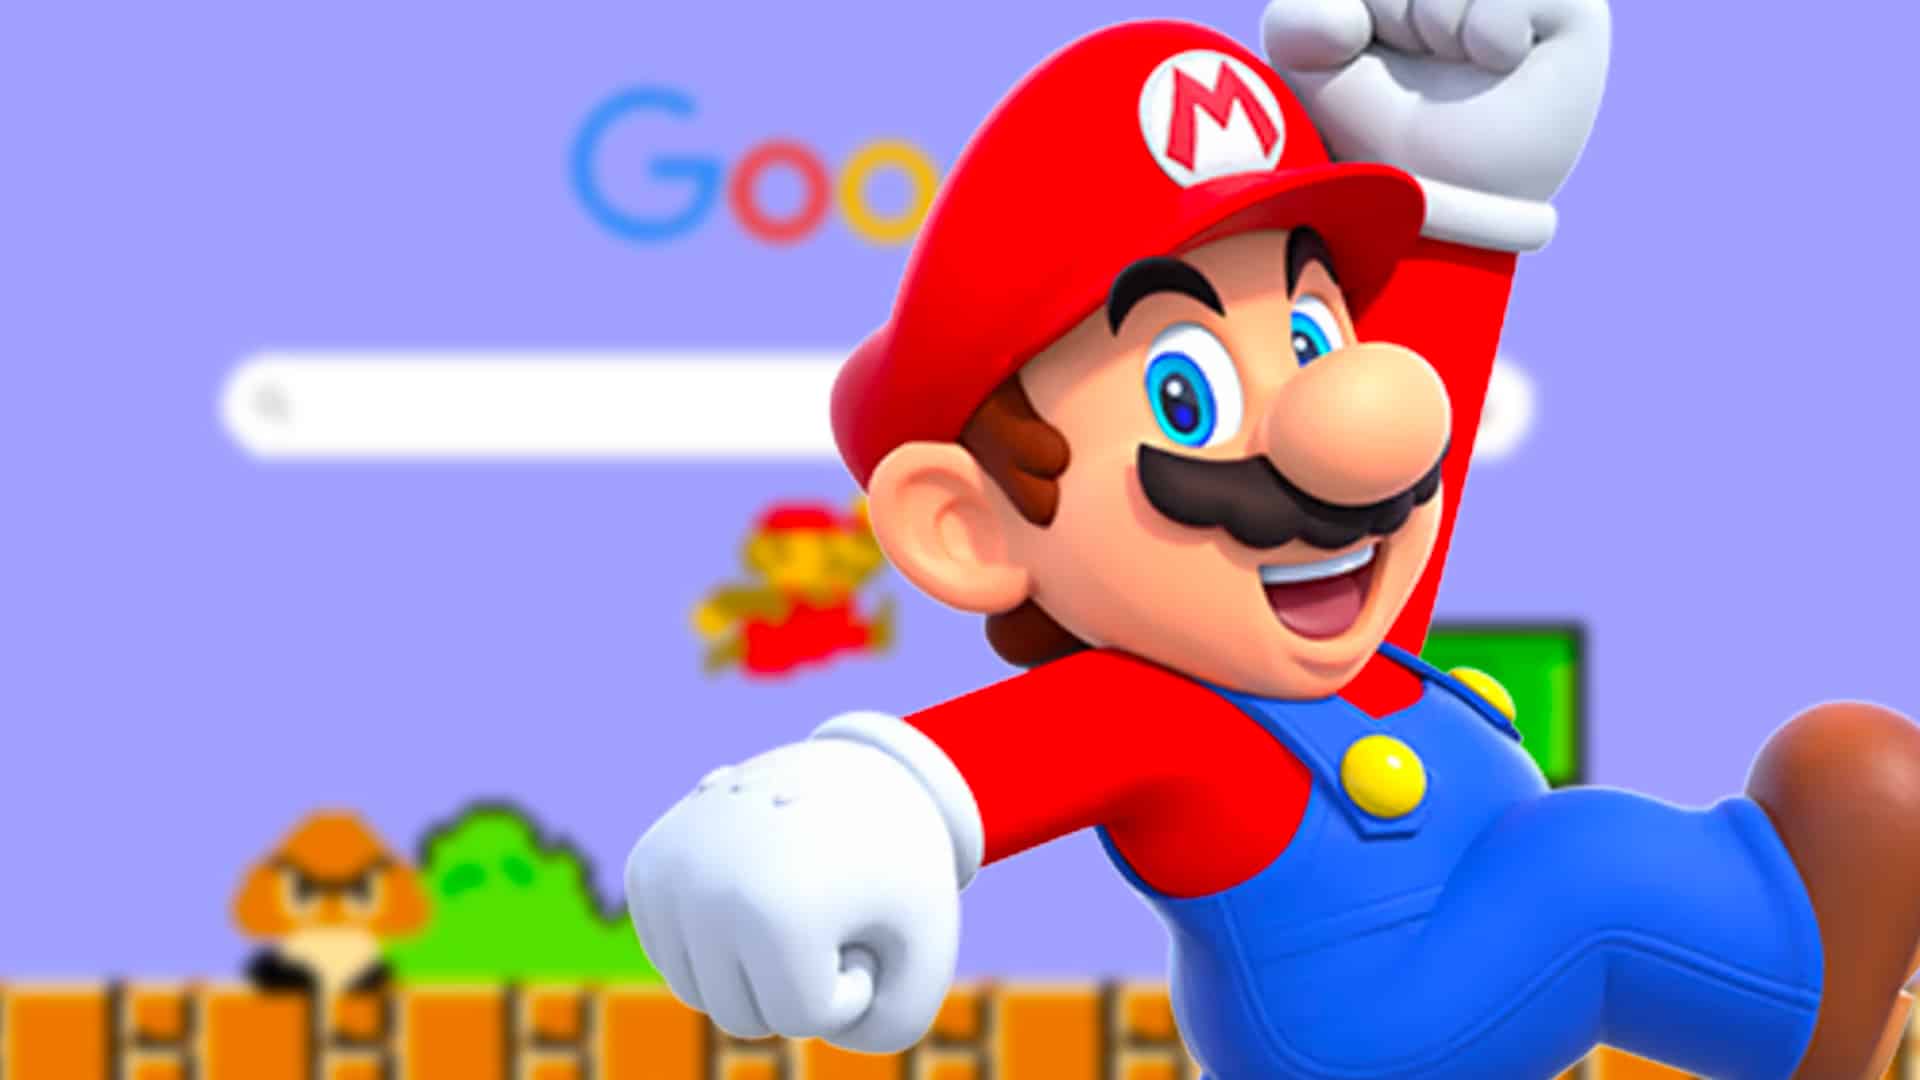 Google Easter Egg To Score Super Mario Bros. Coins